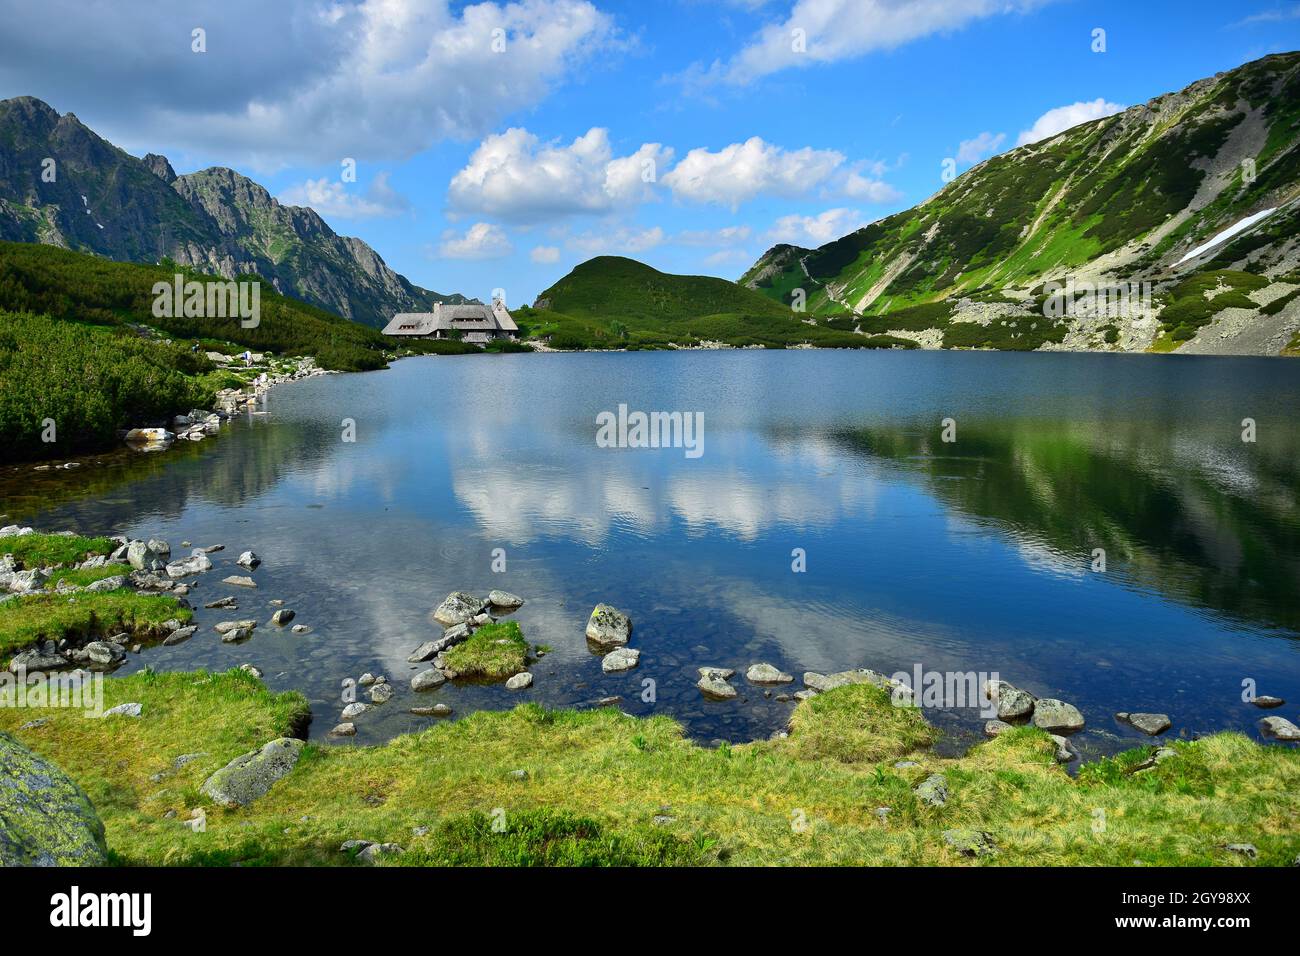 The beautiful lake Przedni Staw and the mountain lodge Schronisko Piec Stawow in the High Tatras, Poland. Stock Photo